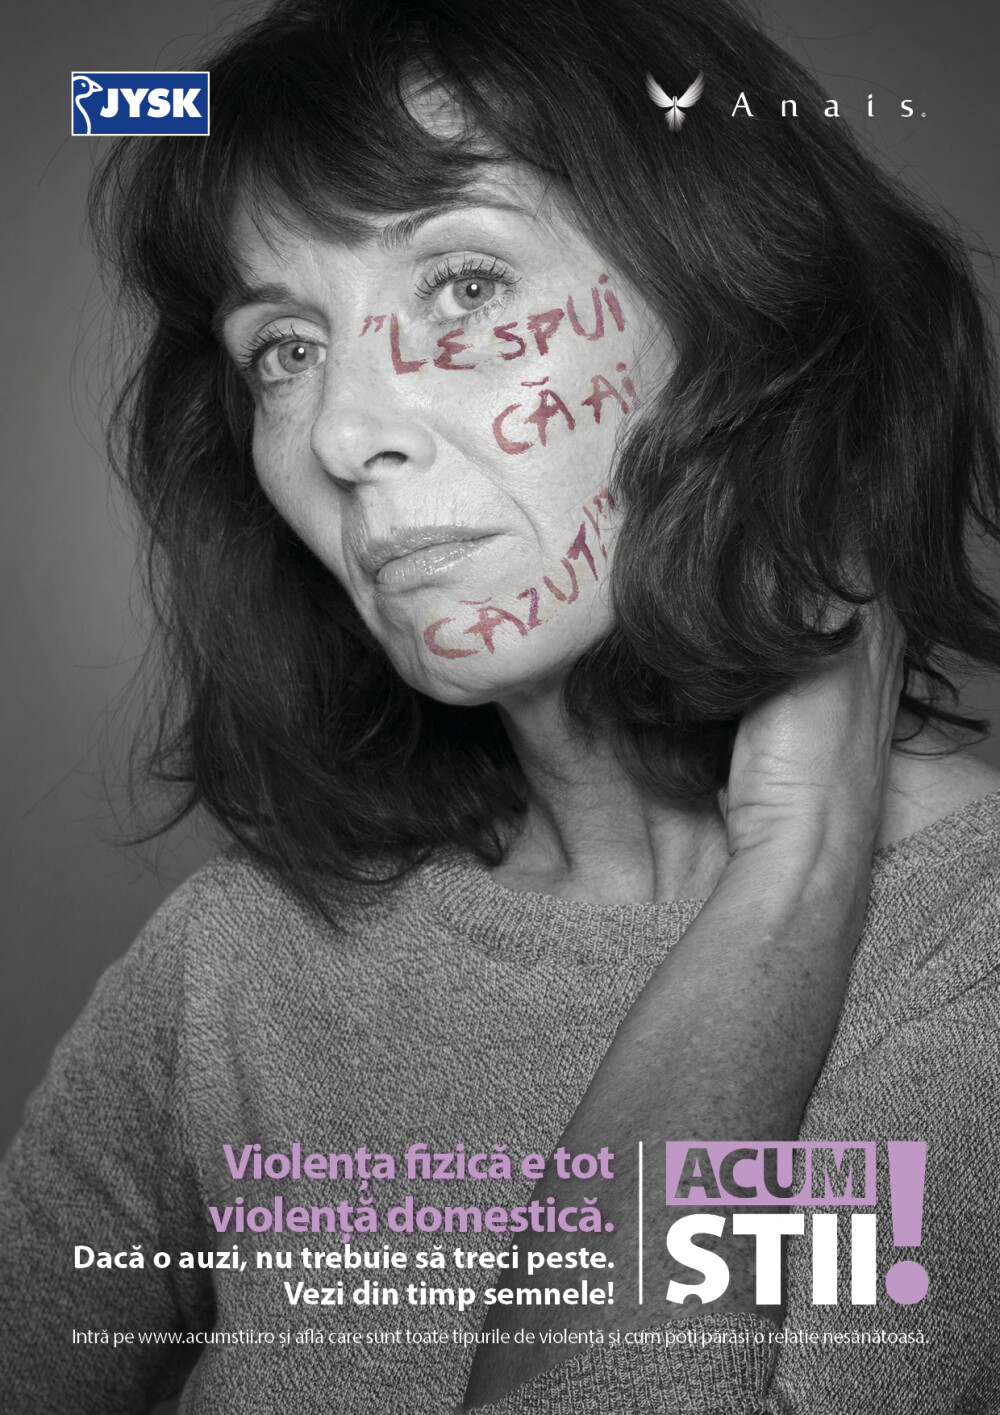 (P) Asociatia Anais si JYSK lanseaza campania de informare cu privire la violența domestică „Acum știi” - Imaginea 1